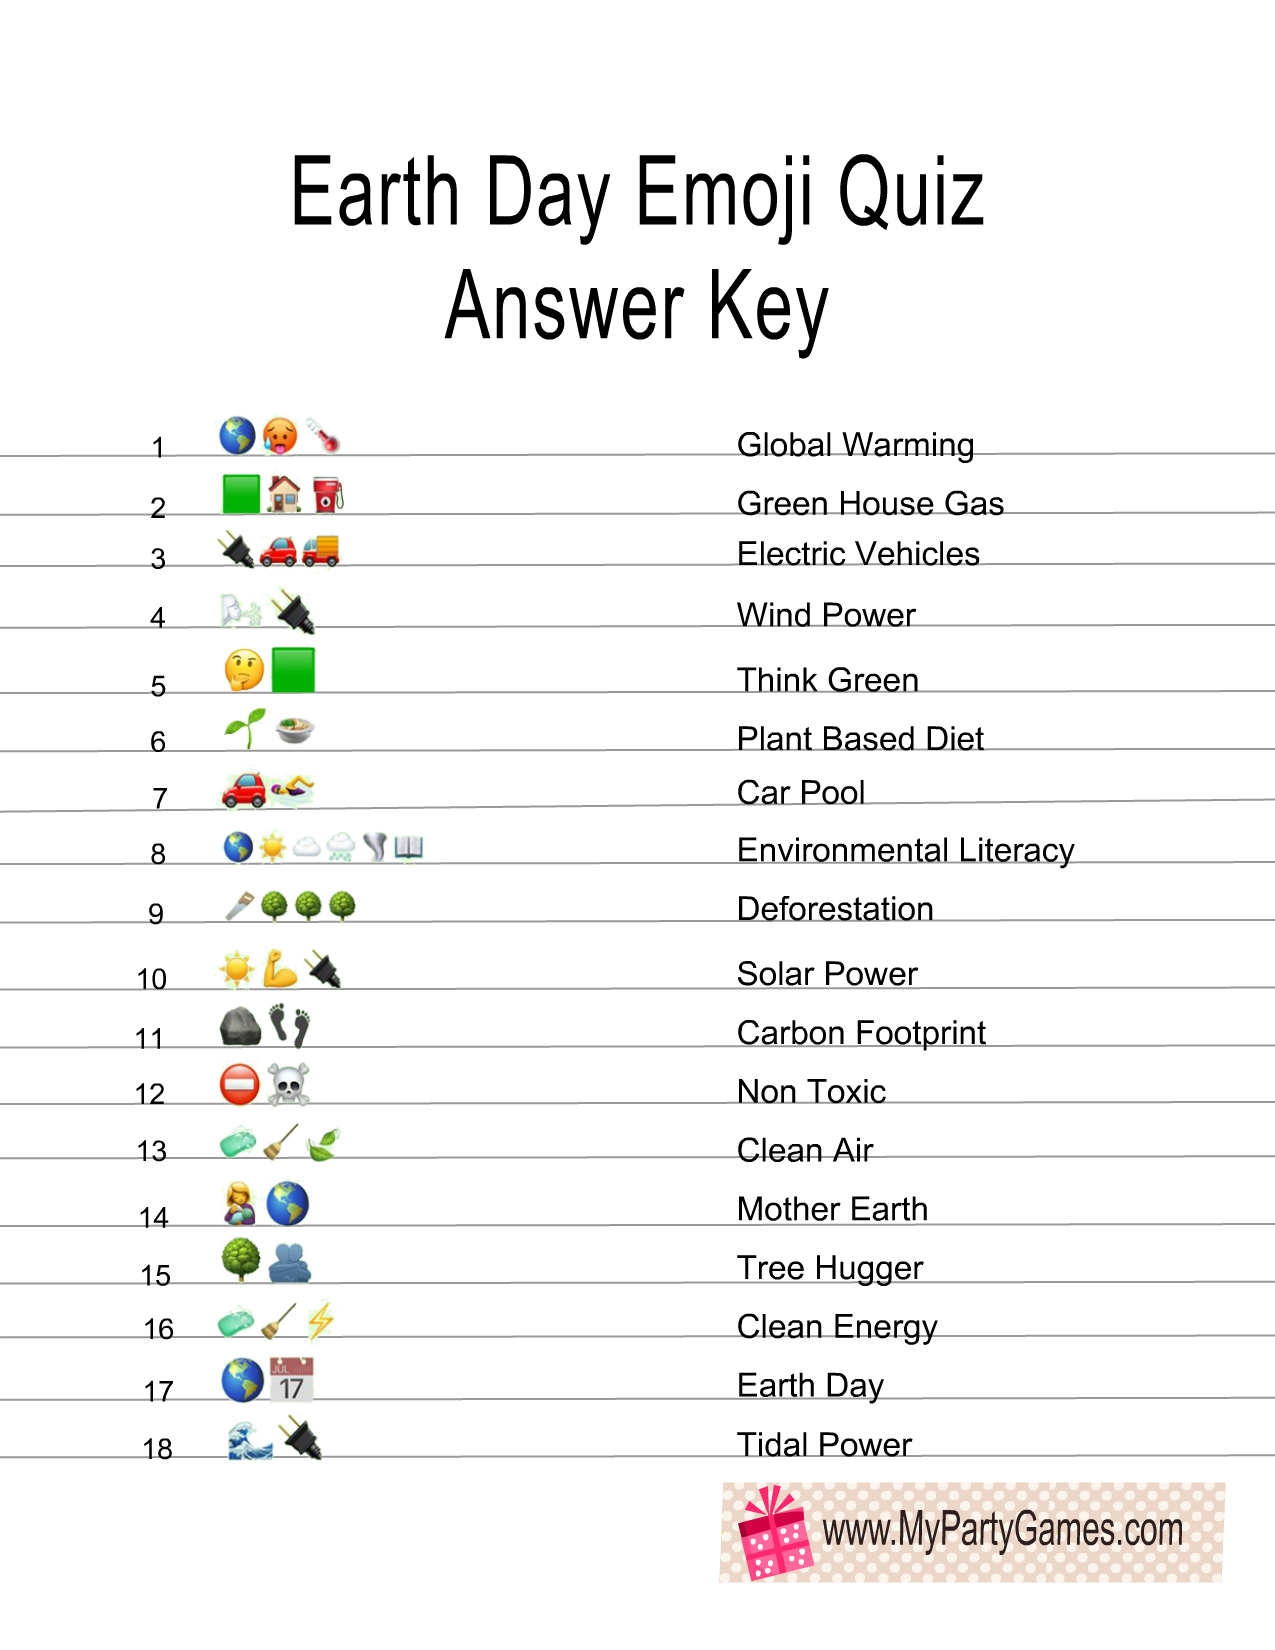 Earth Day Emoji Pictionary Quiz Answer Key